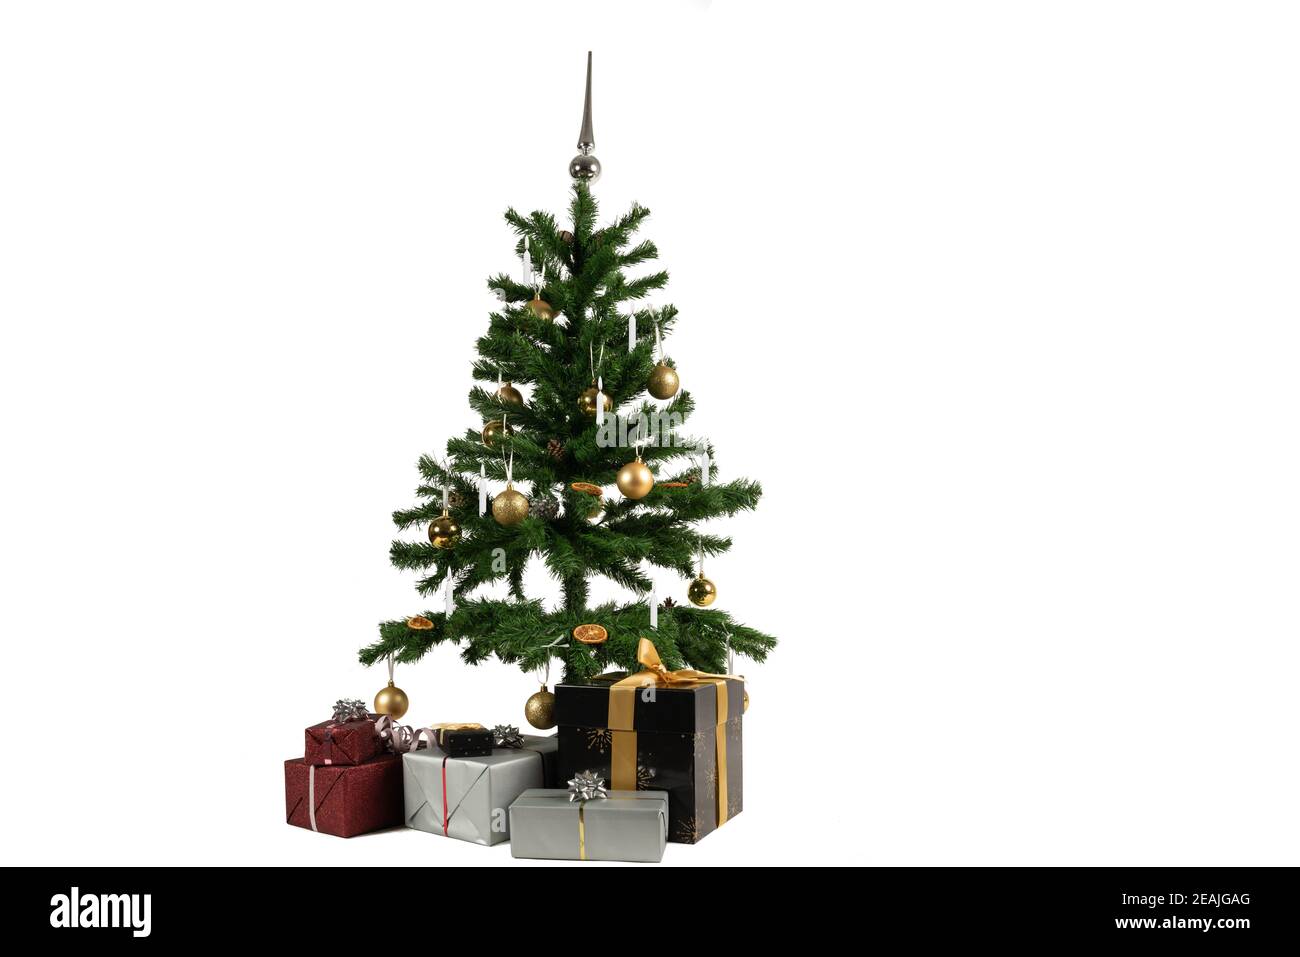 un árbol de navidad decorado con canicas y velas y regalos debajo Foto de stock